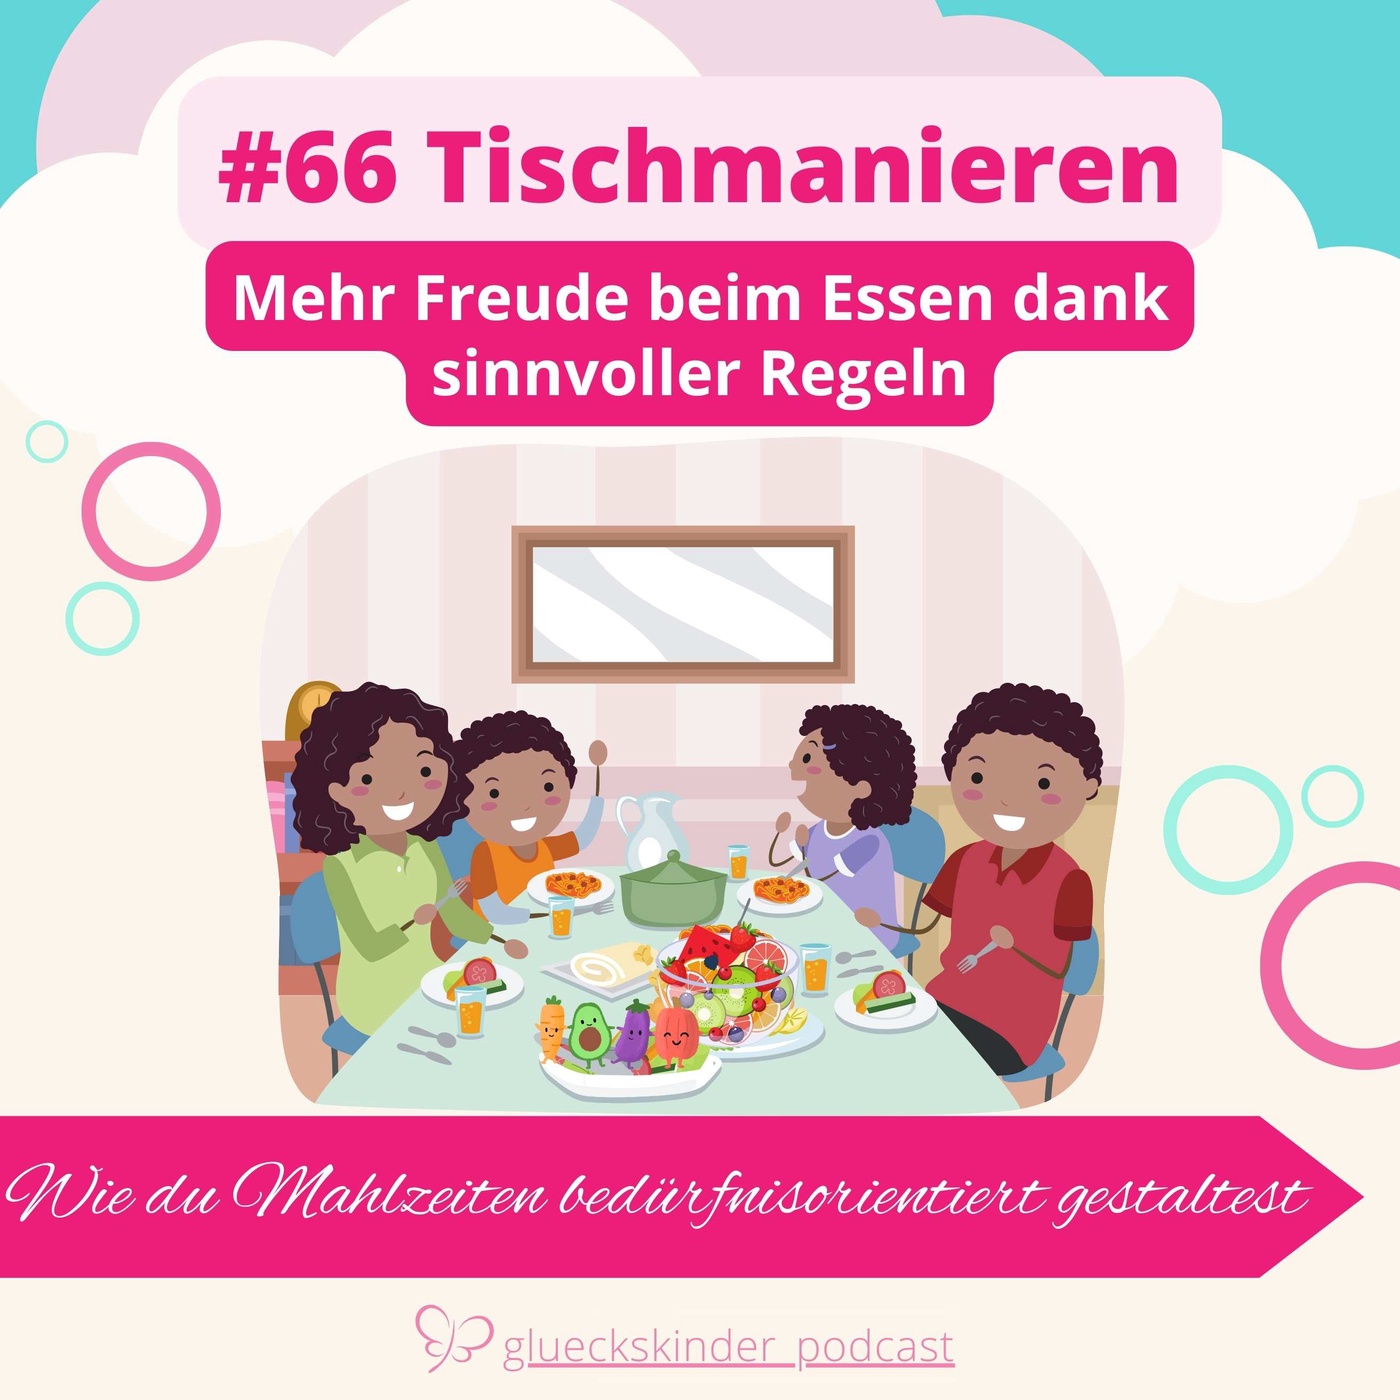 #66 Tischmanieren mit Kindern: Gemeinsame Mahlzeiten bedürfnisorientiert gestalten